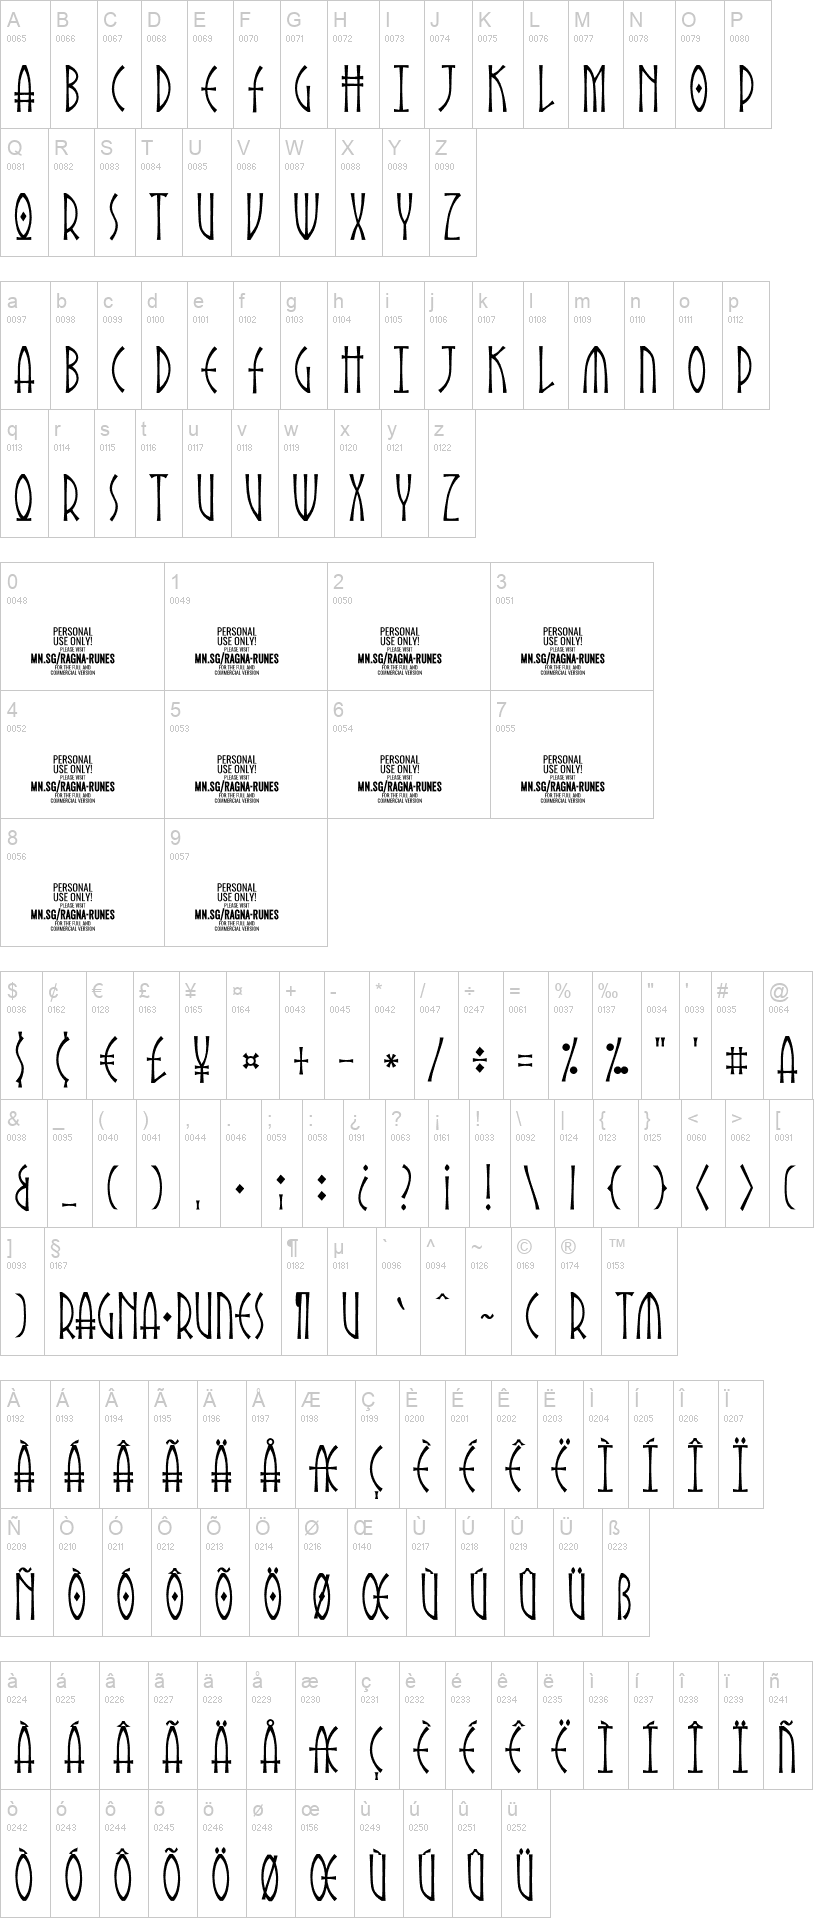 Ragna Runes